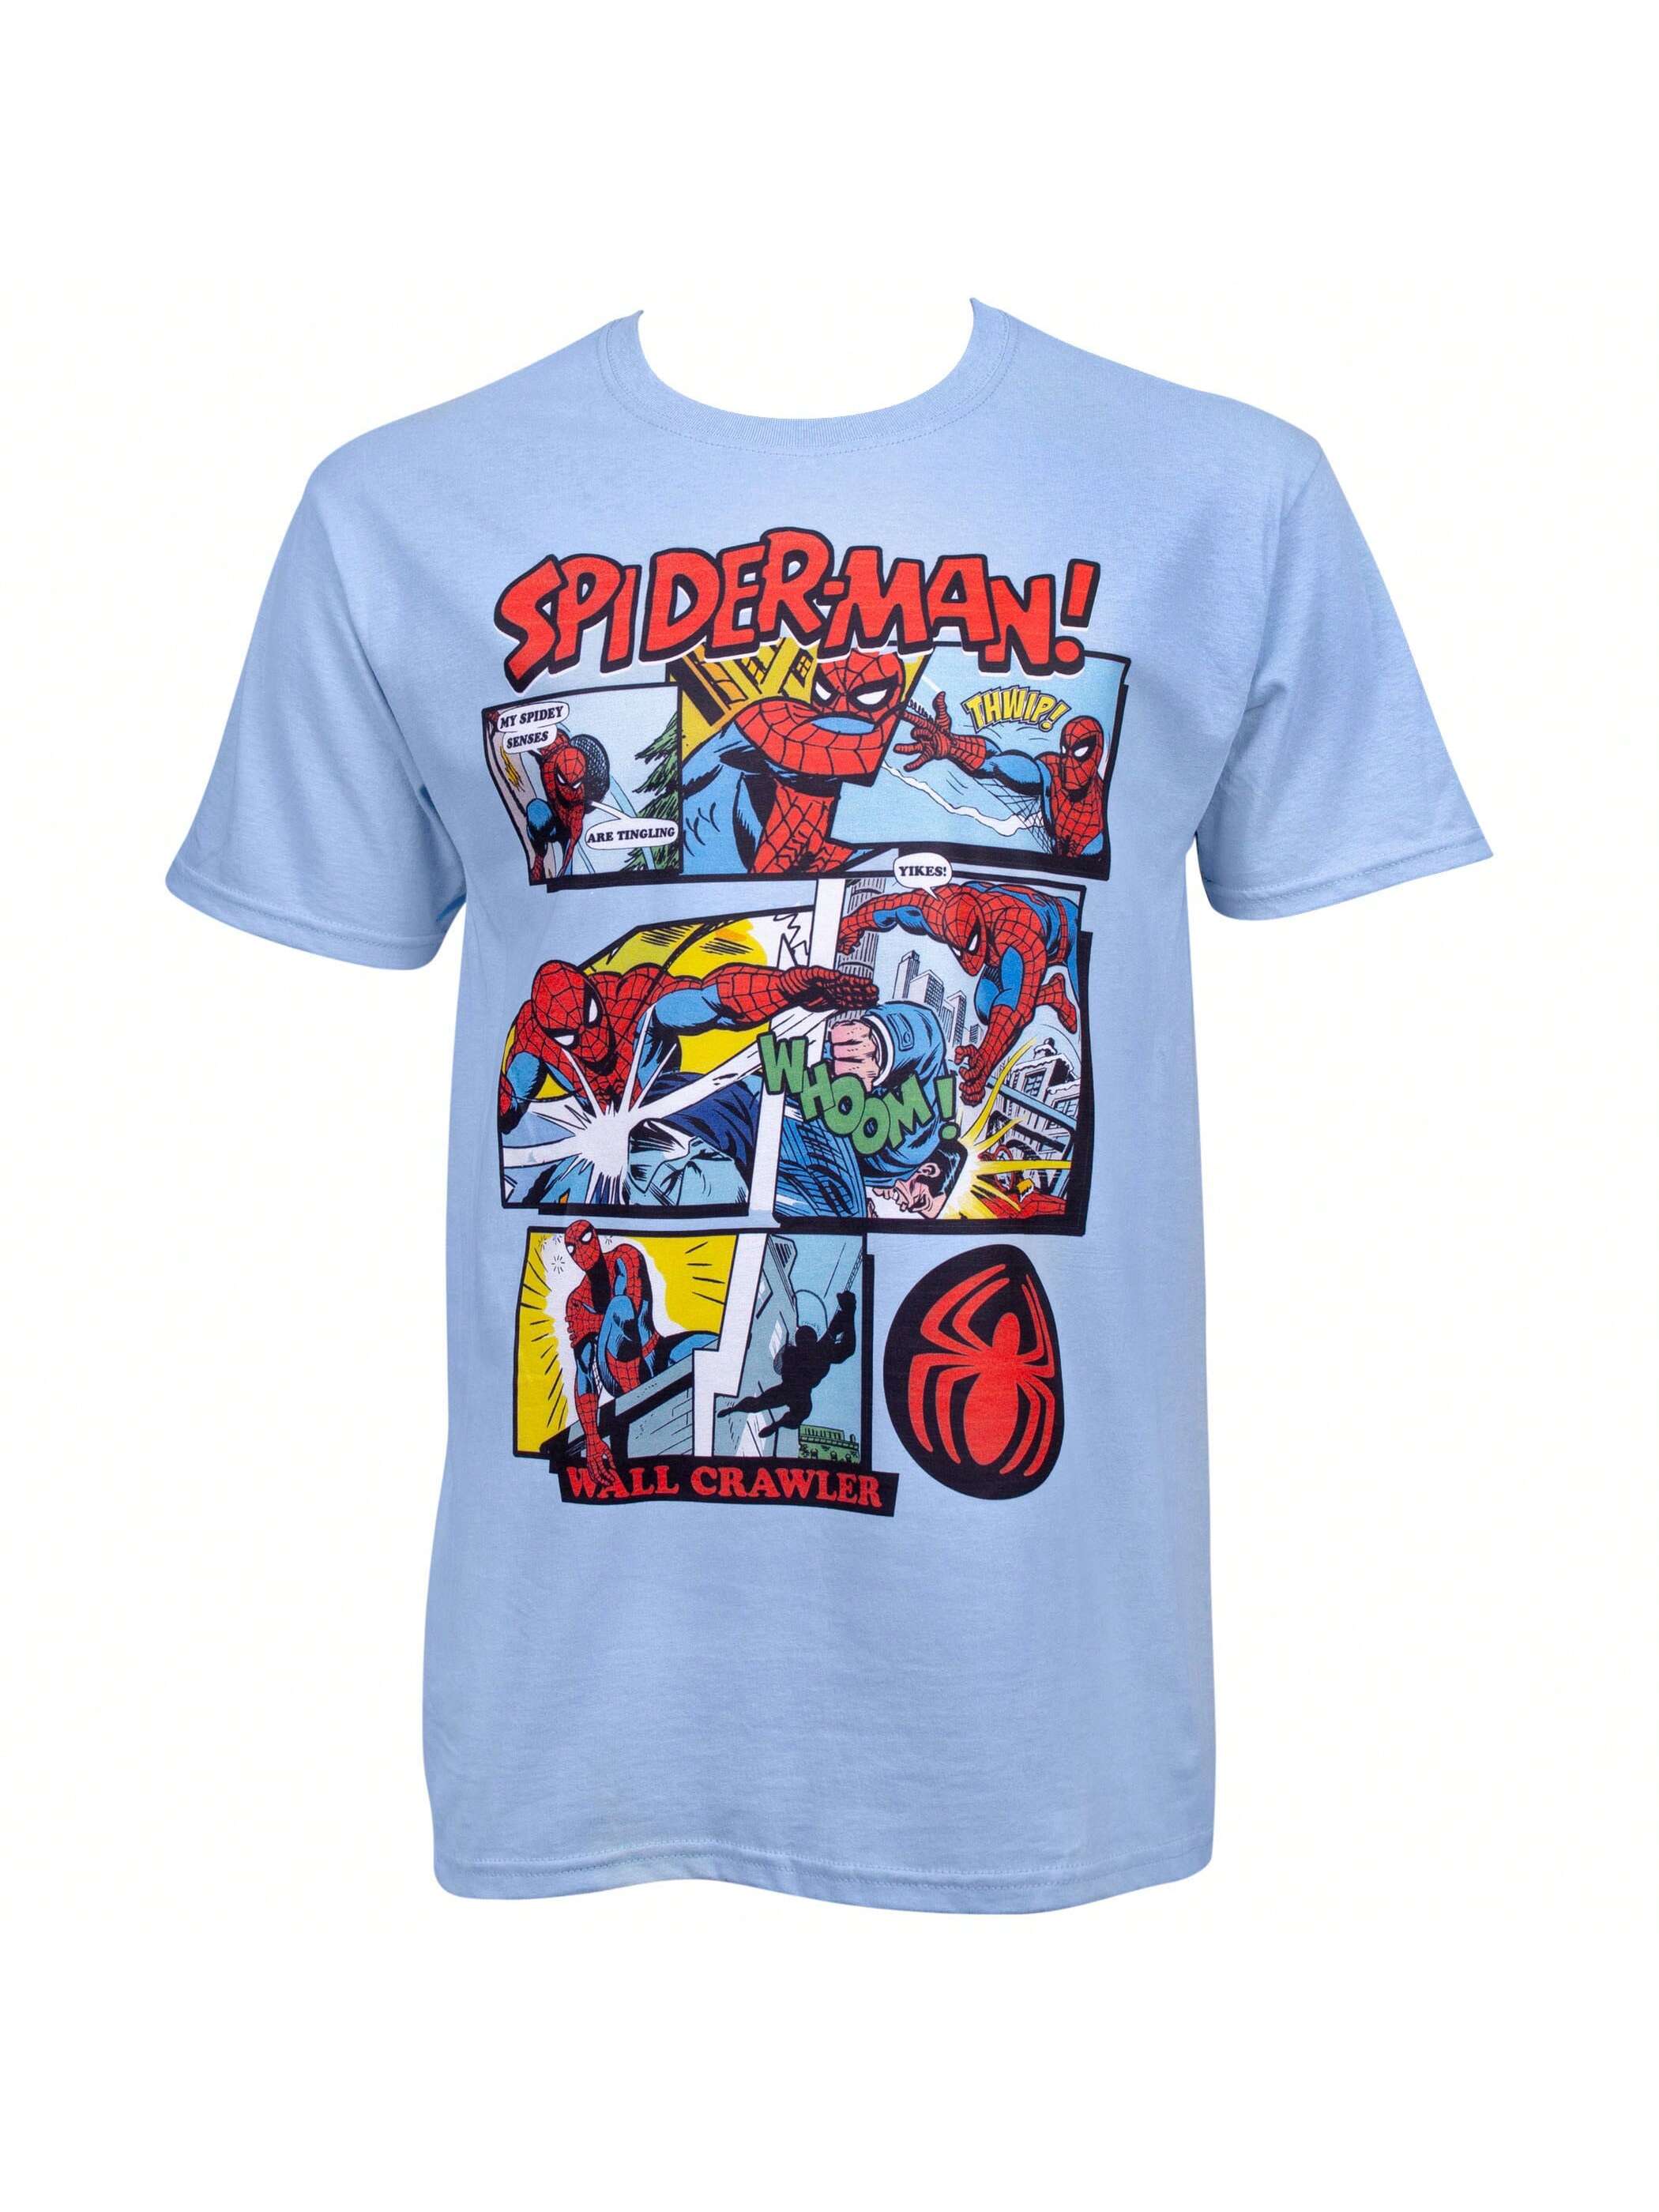 Синяя футболка с панелями комиксов Marvel Spider-Man, синий набор hollywood rides marvel spider man